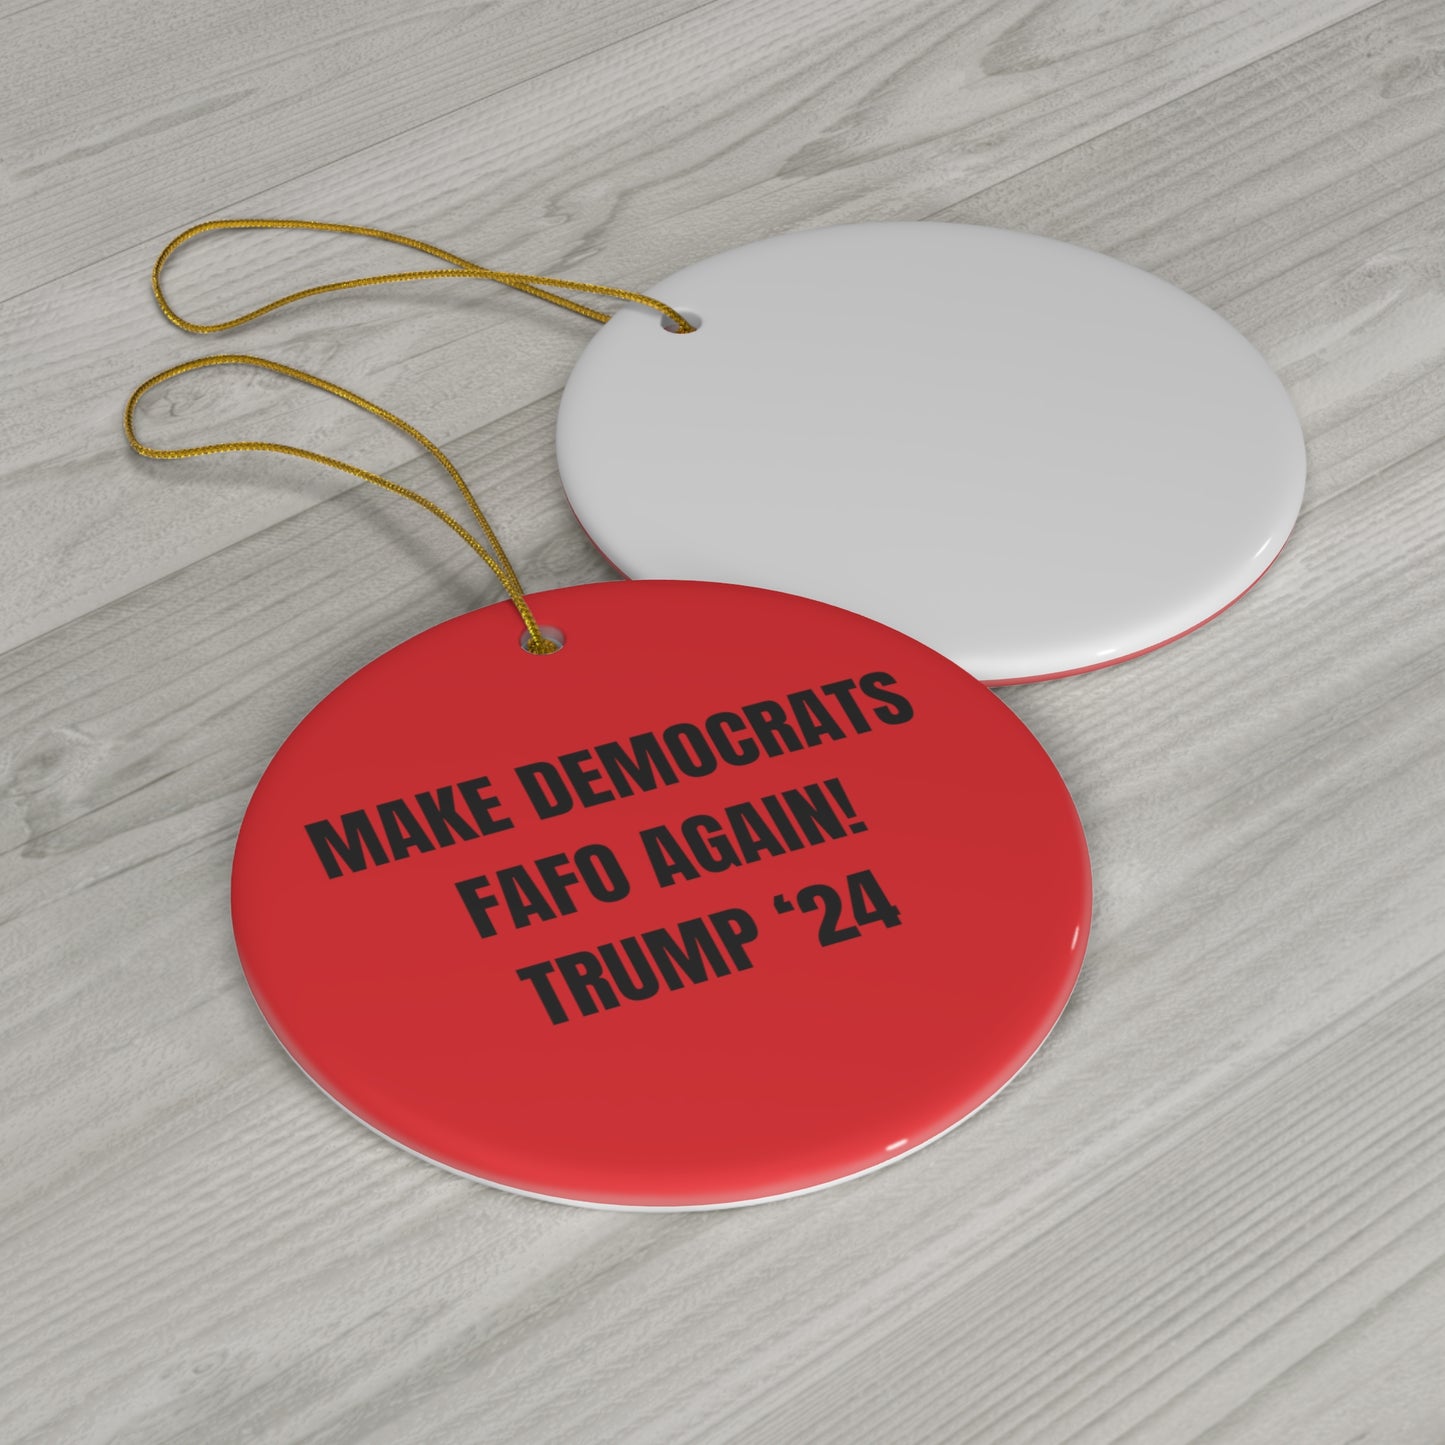 “MAKE DEMOCRATS FAFO AGAIN! TRUMP 2024” Ceramic Ornament, 4 Shapes